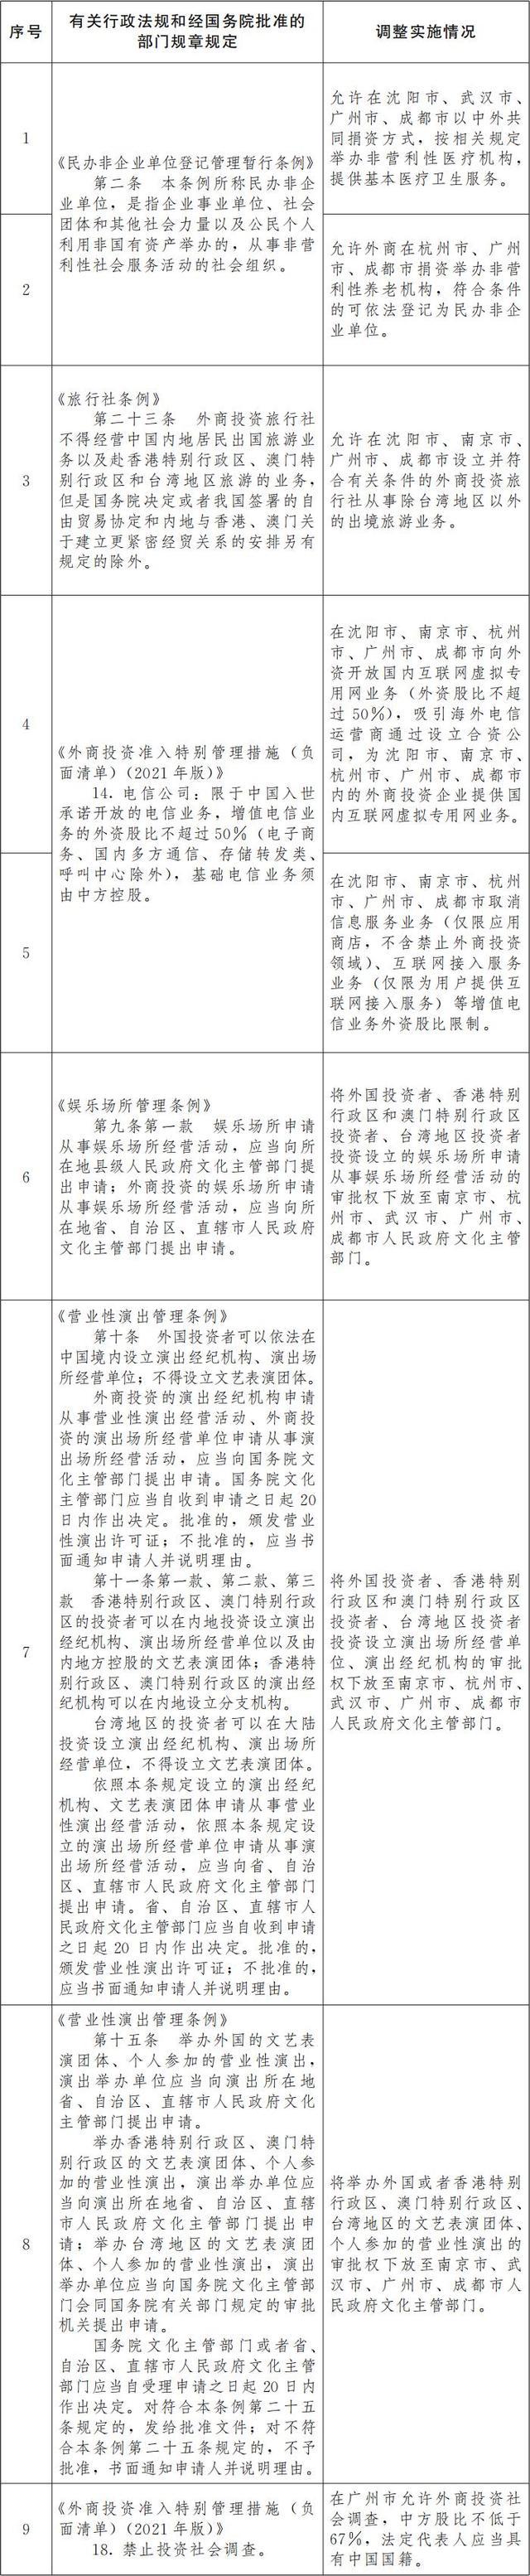 国务院：同意在沈阳等6个城市暂时调整实施有关行政法规和经国务院批准的部门规章规定